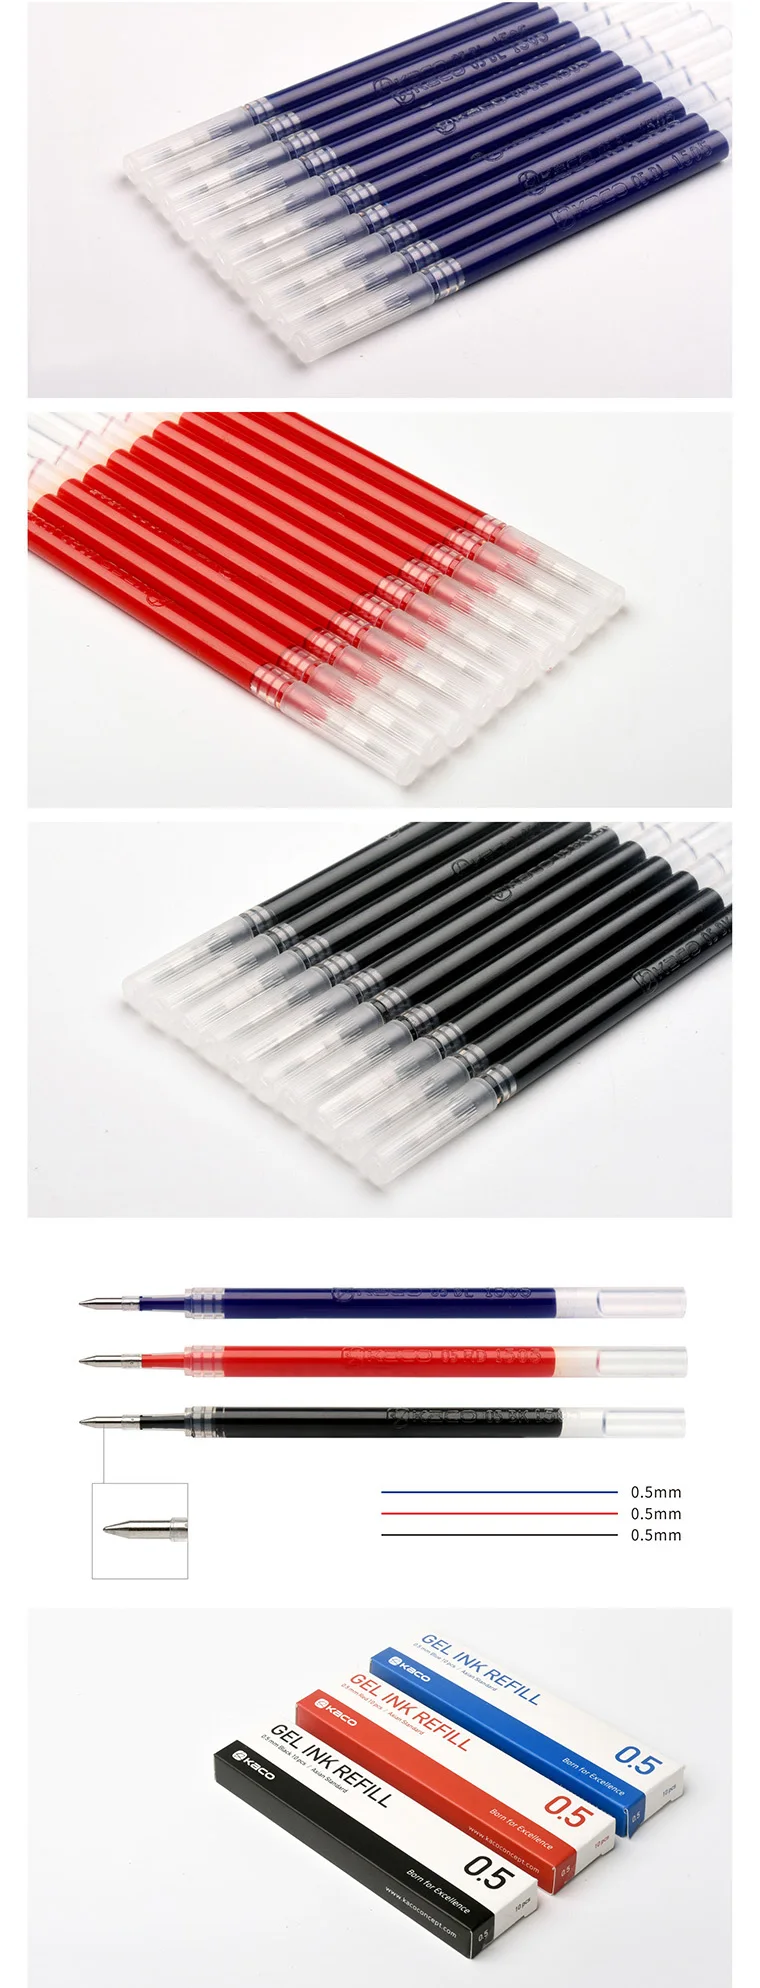 4 вида цветов Xiaomi Youpin Kaco геля чернил Refill Стандартный Универсальный 10 шт./кор. гелевые ручки 0,5 мм для заправки зажигалок школьные канцелярские принадлежности